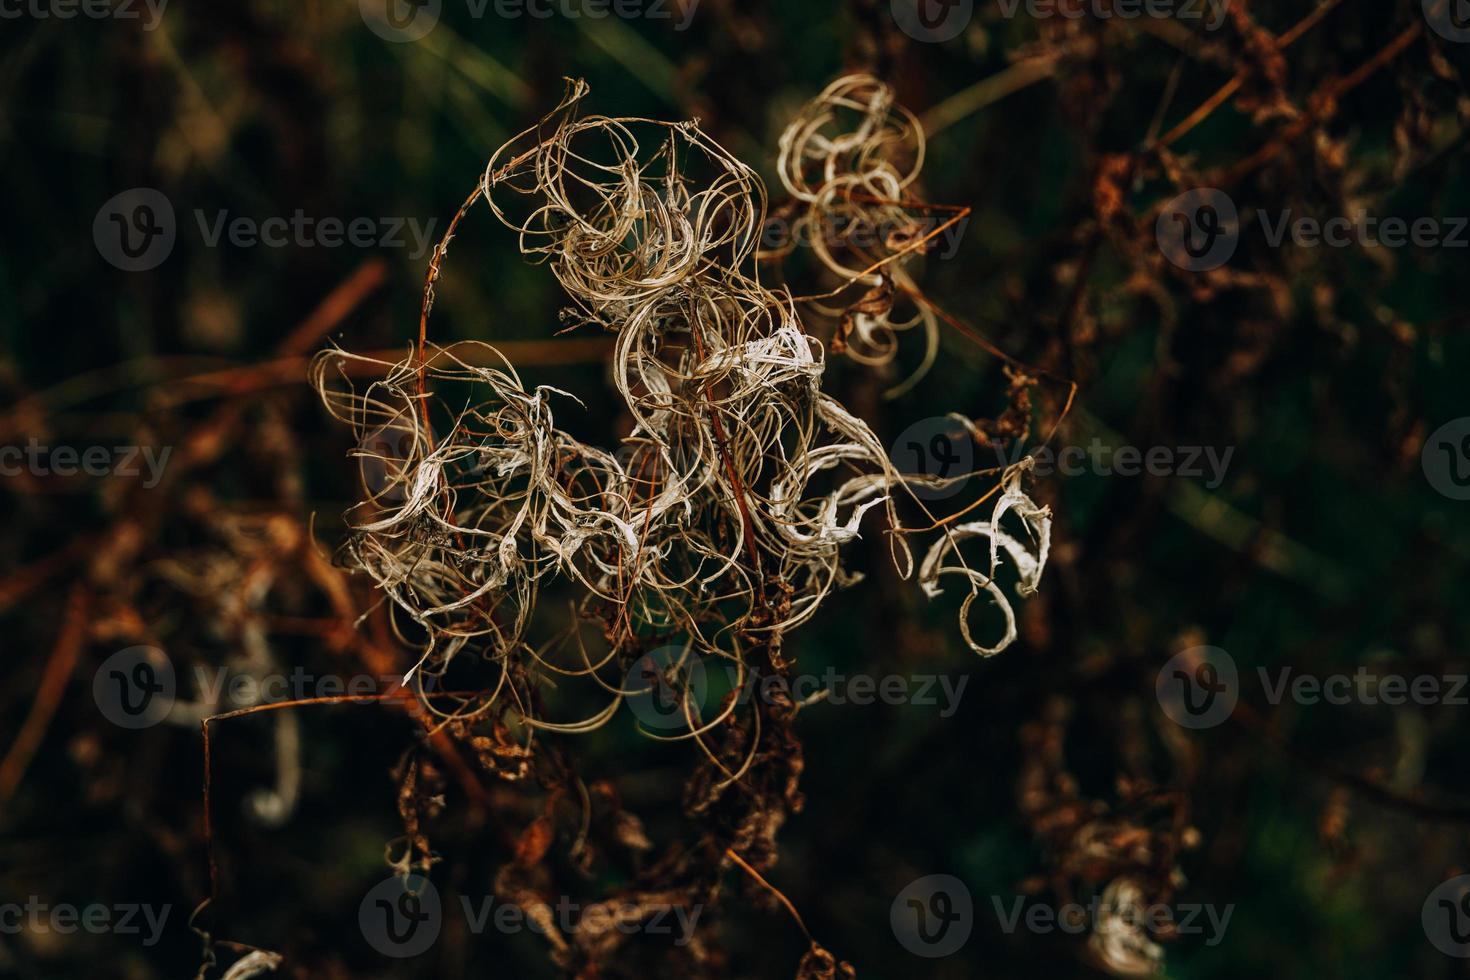 intressant abstrakt höst växt på naturlig bakgrund foto